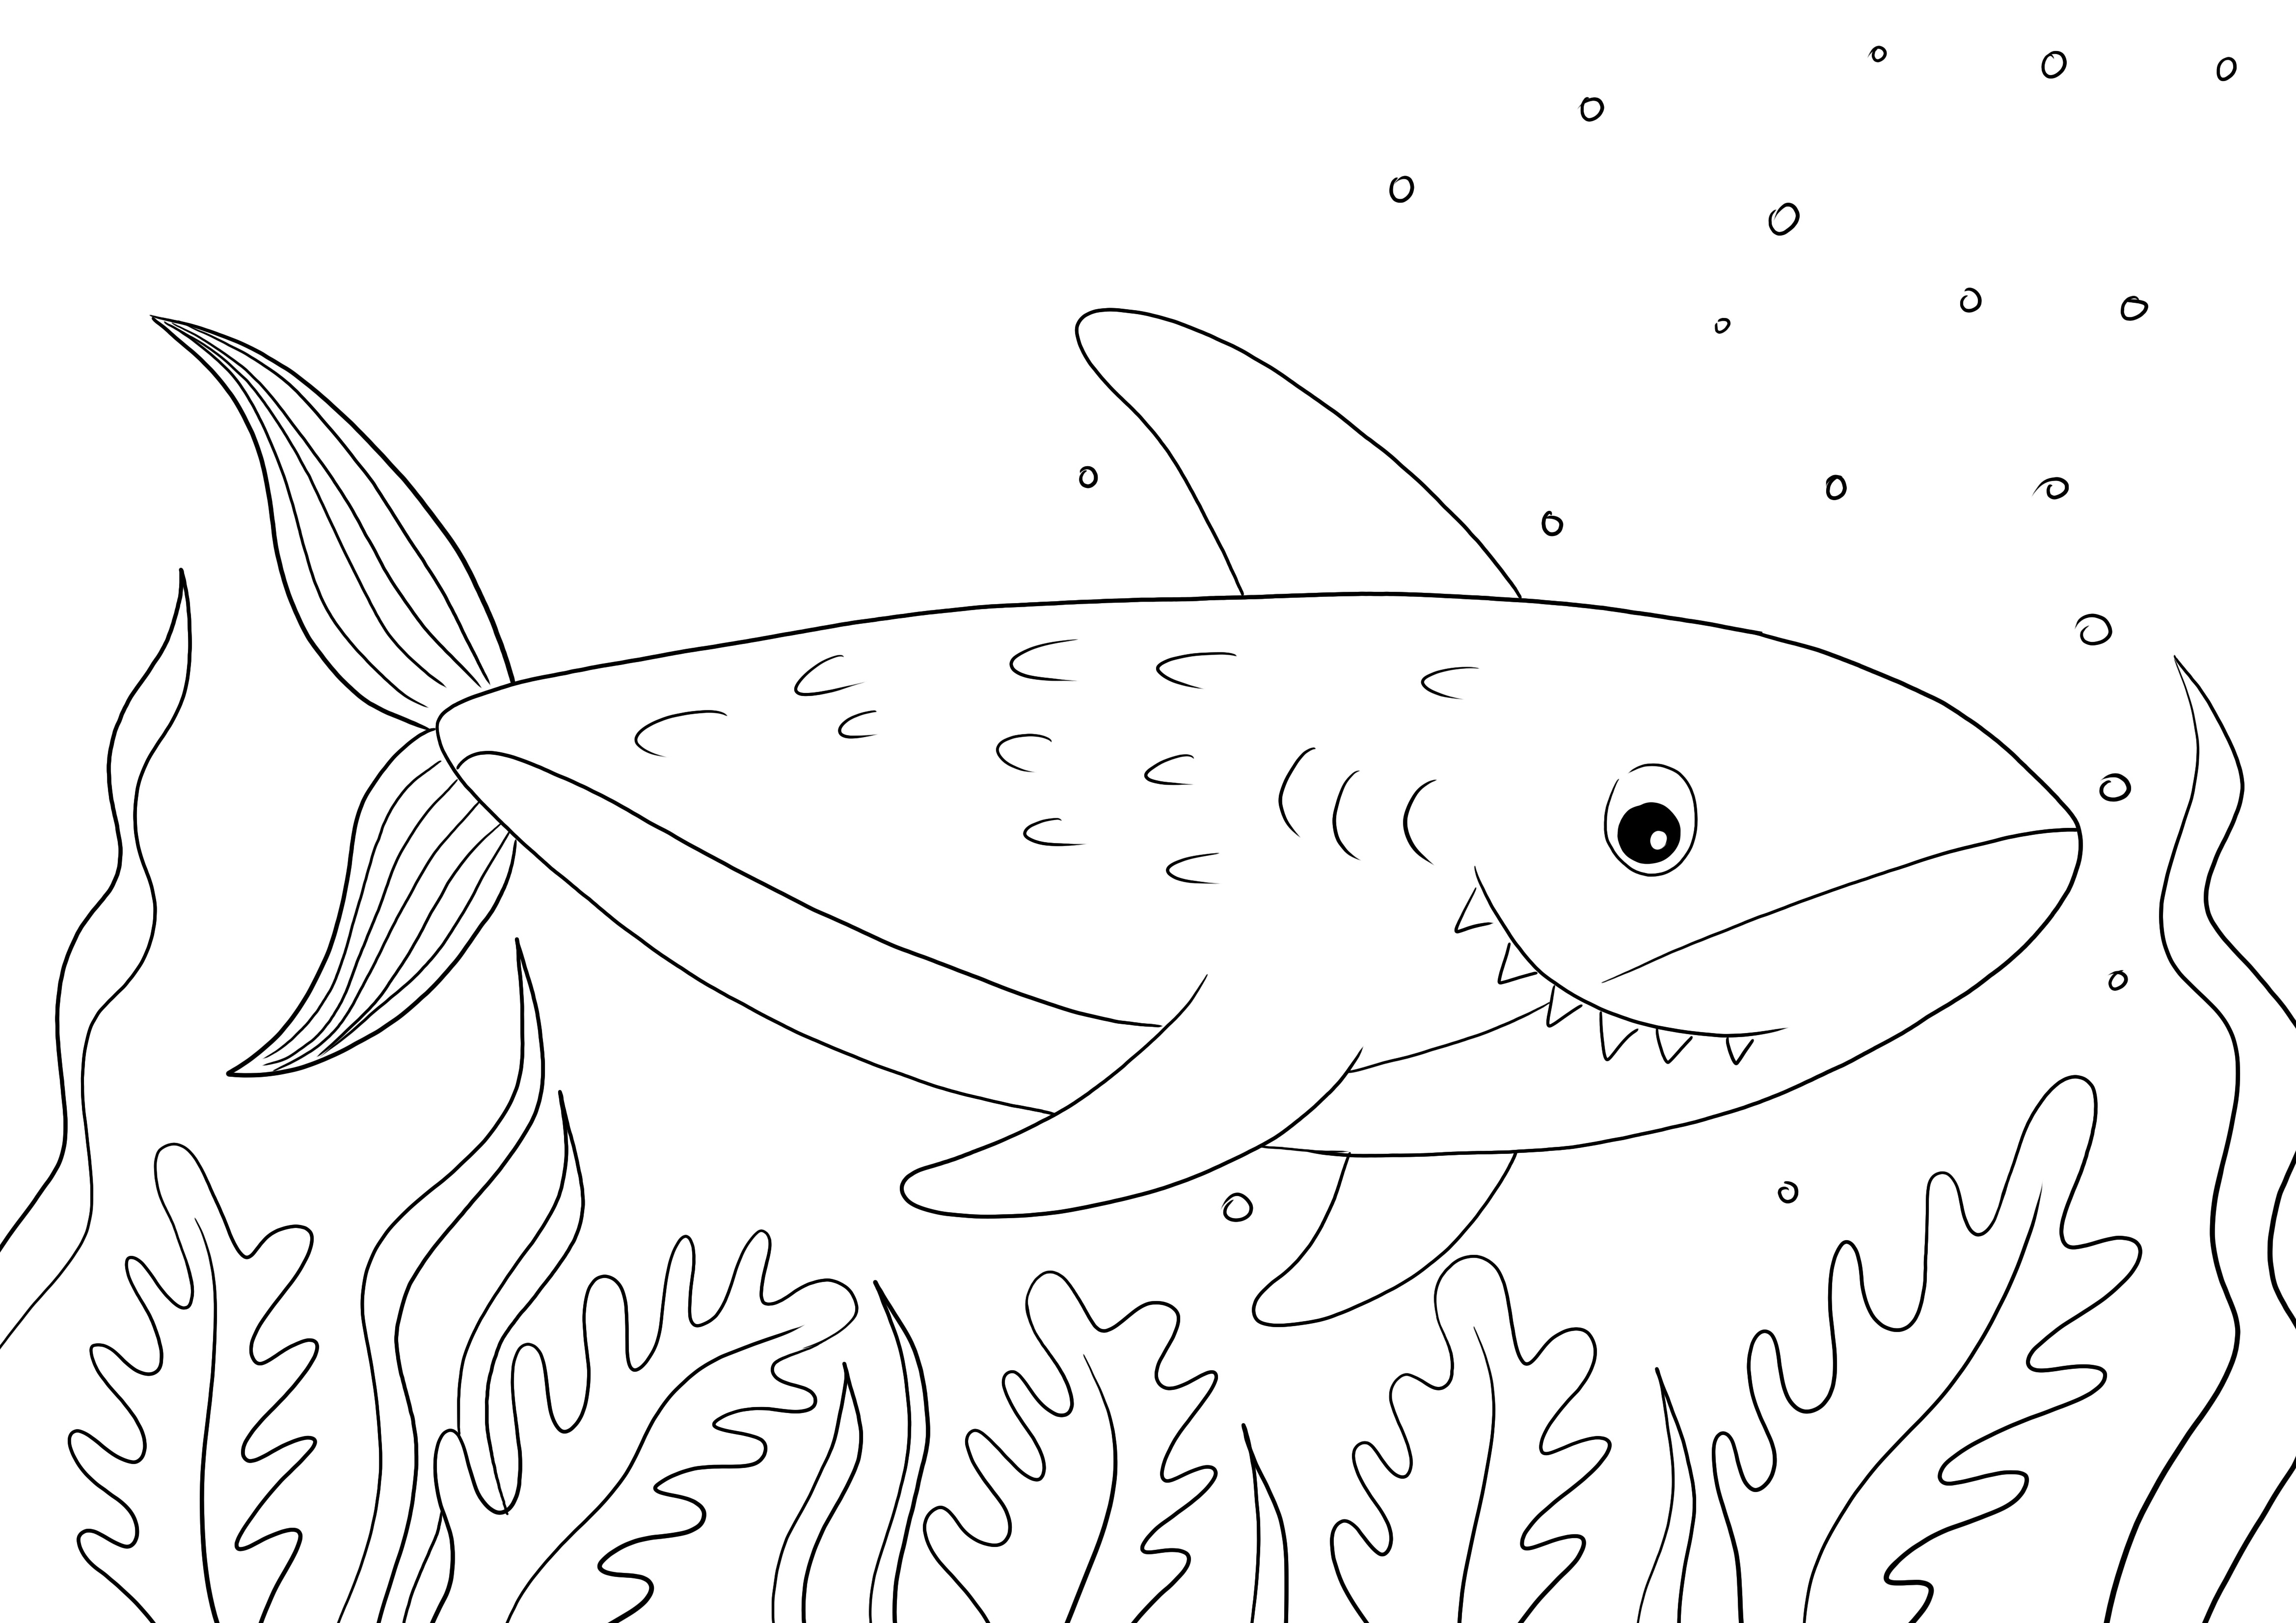 Impresión fácil y gratuita de una página para colorear de tiburones para que los niños aprendan sobre los animales marinos